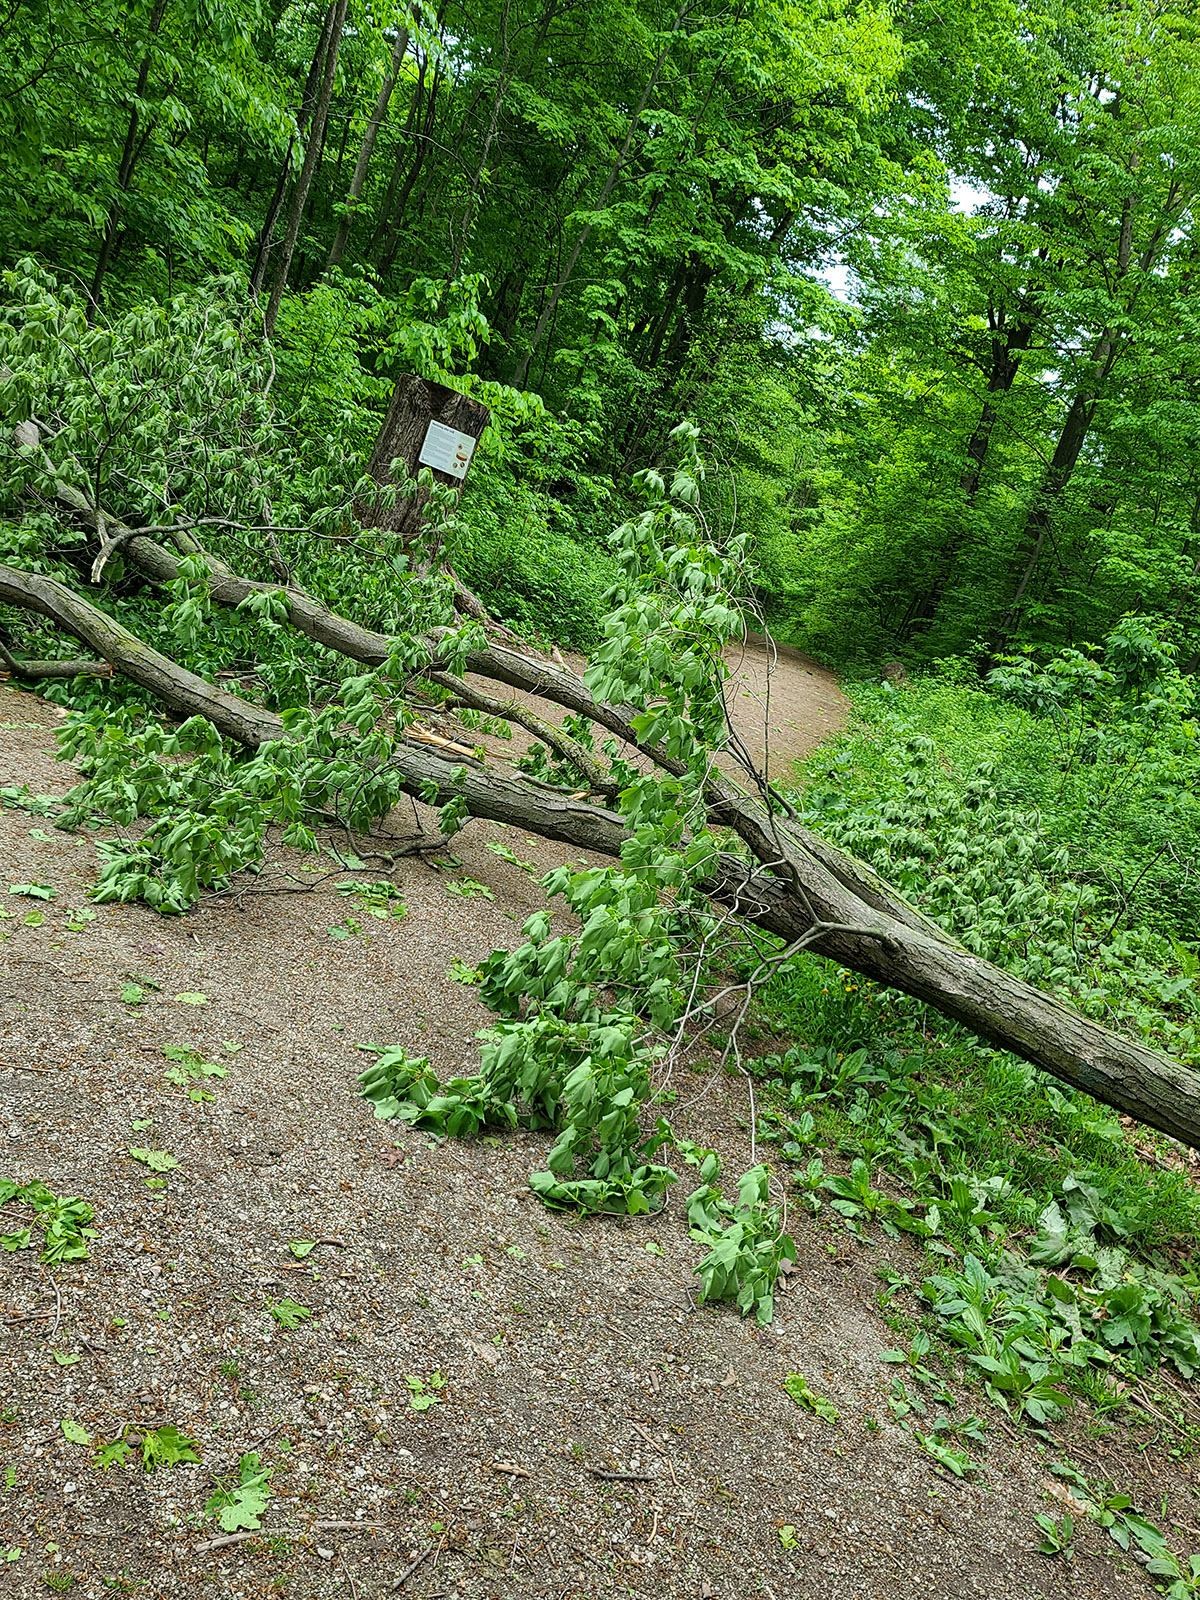 A tree fallen across a hiking trail.